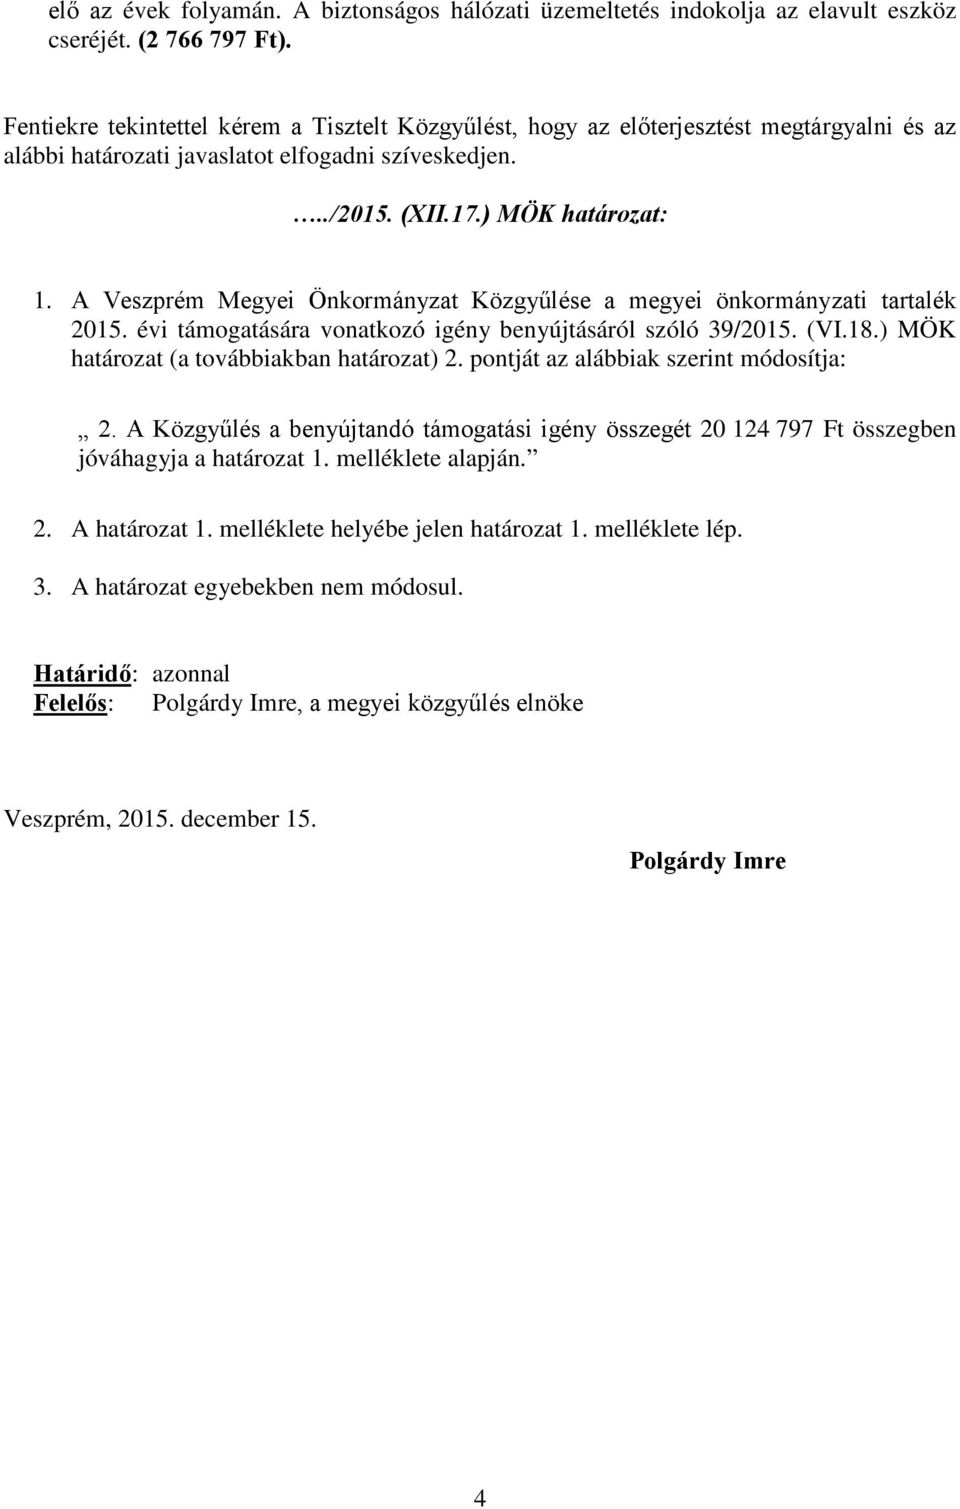 A Veszprém Megyei Önkormányzat Közgyűlése a megyei önkormányzati tartalék 2015. évi támogatására vonatkozó igény benyújtásáról szóló 39/2015. (VI.18.) MÖK határozat (a továbbiakban határozat) 2.